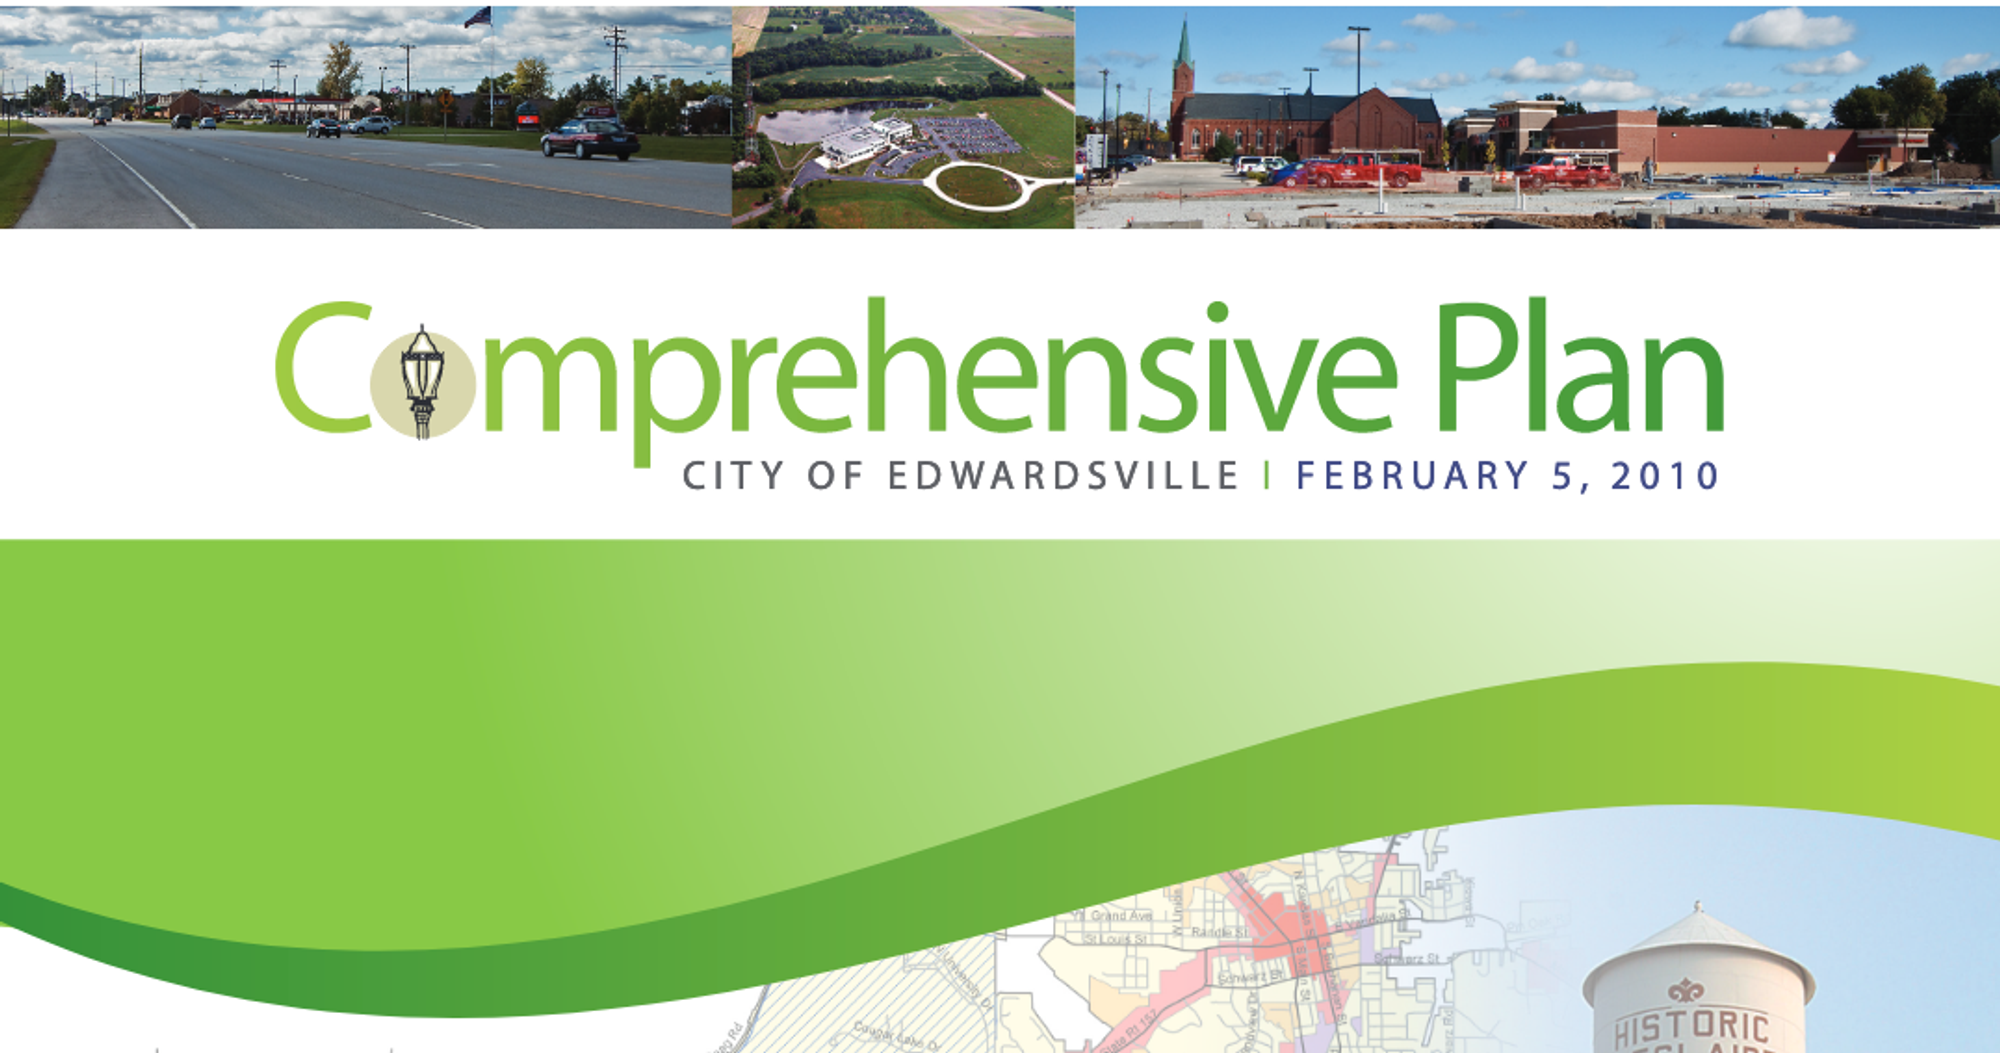 Edwardsville’s 2010 Comprehensive Plan